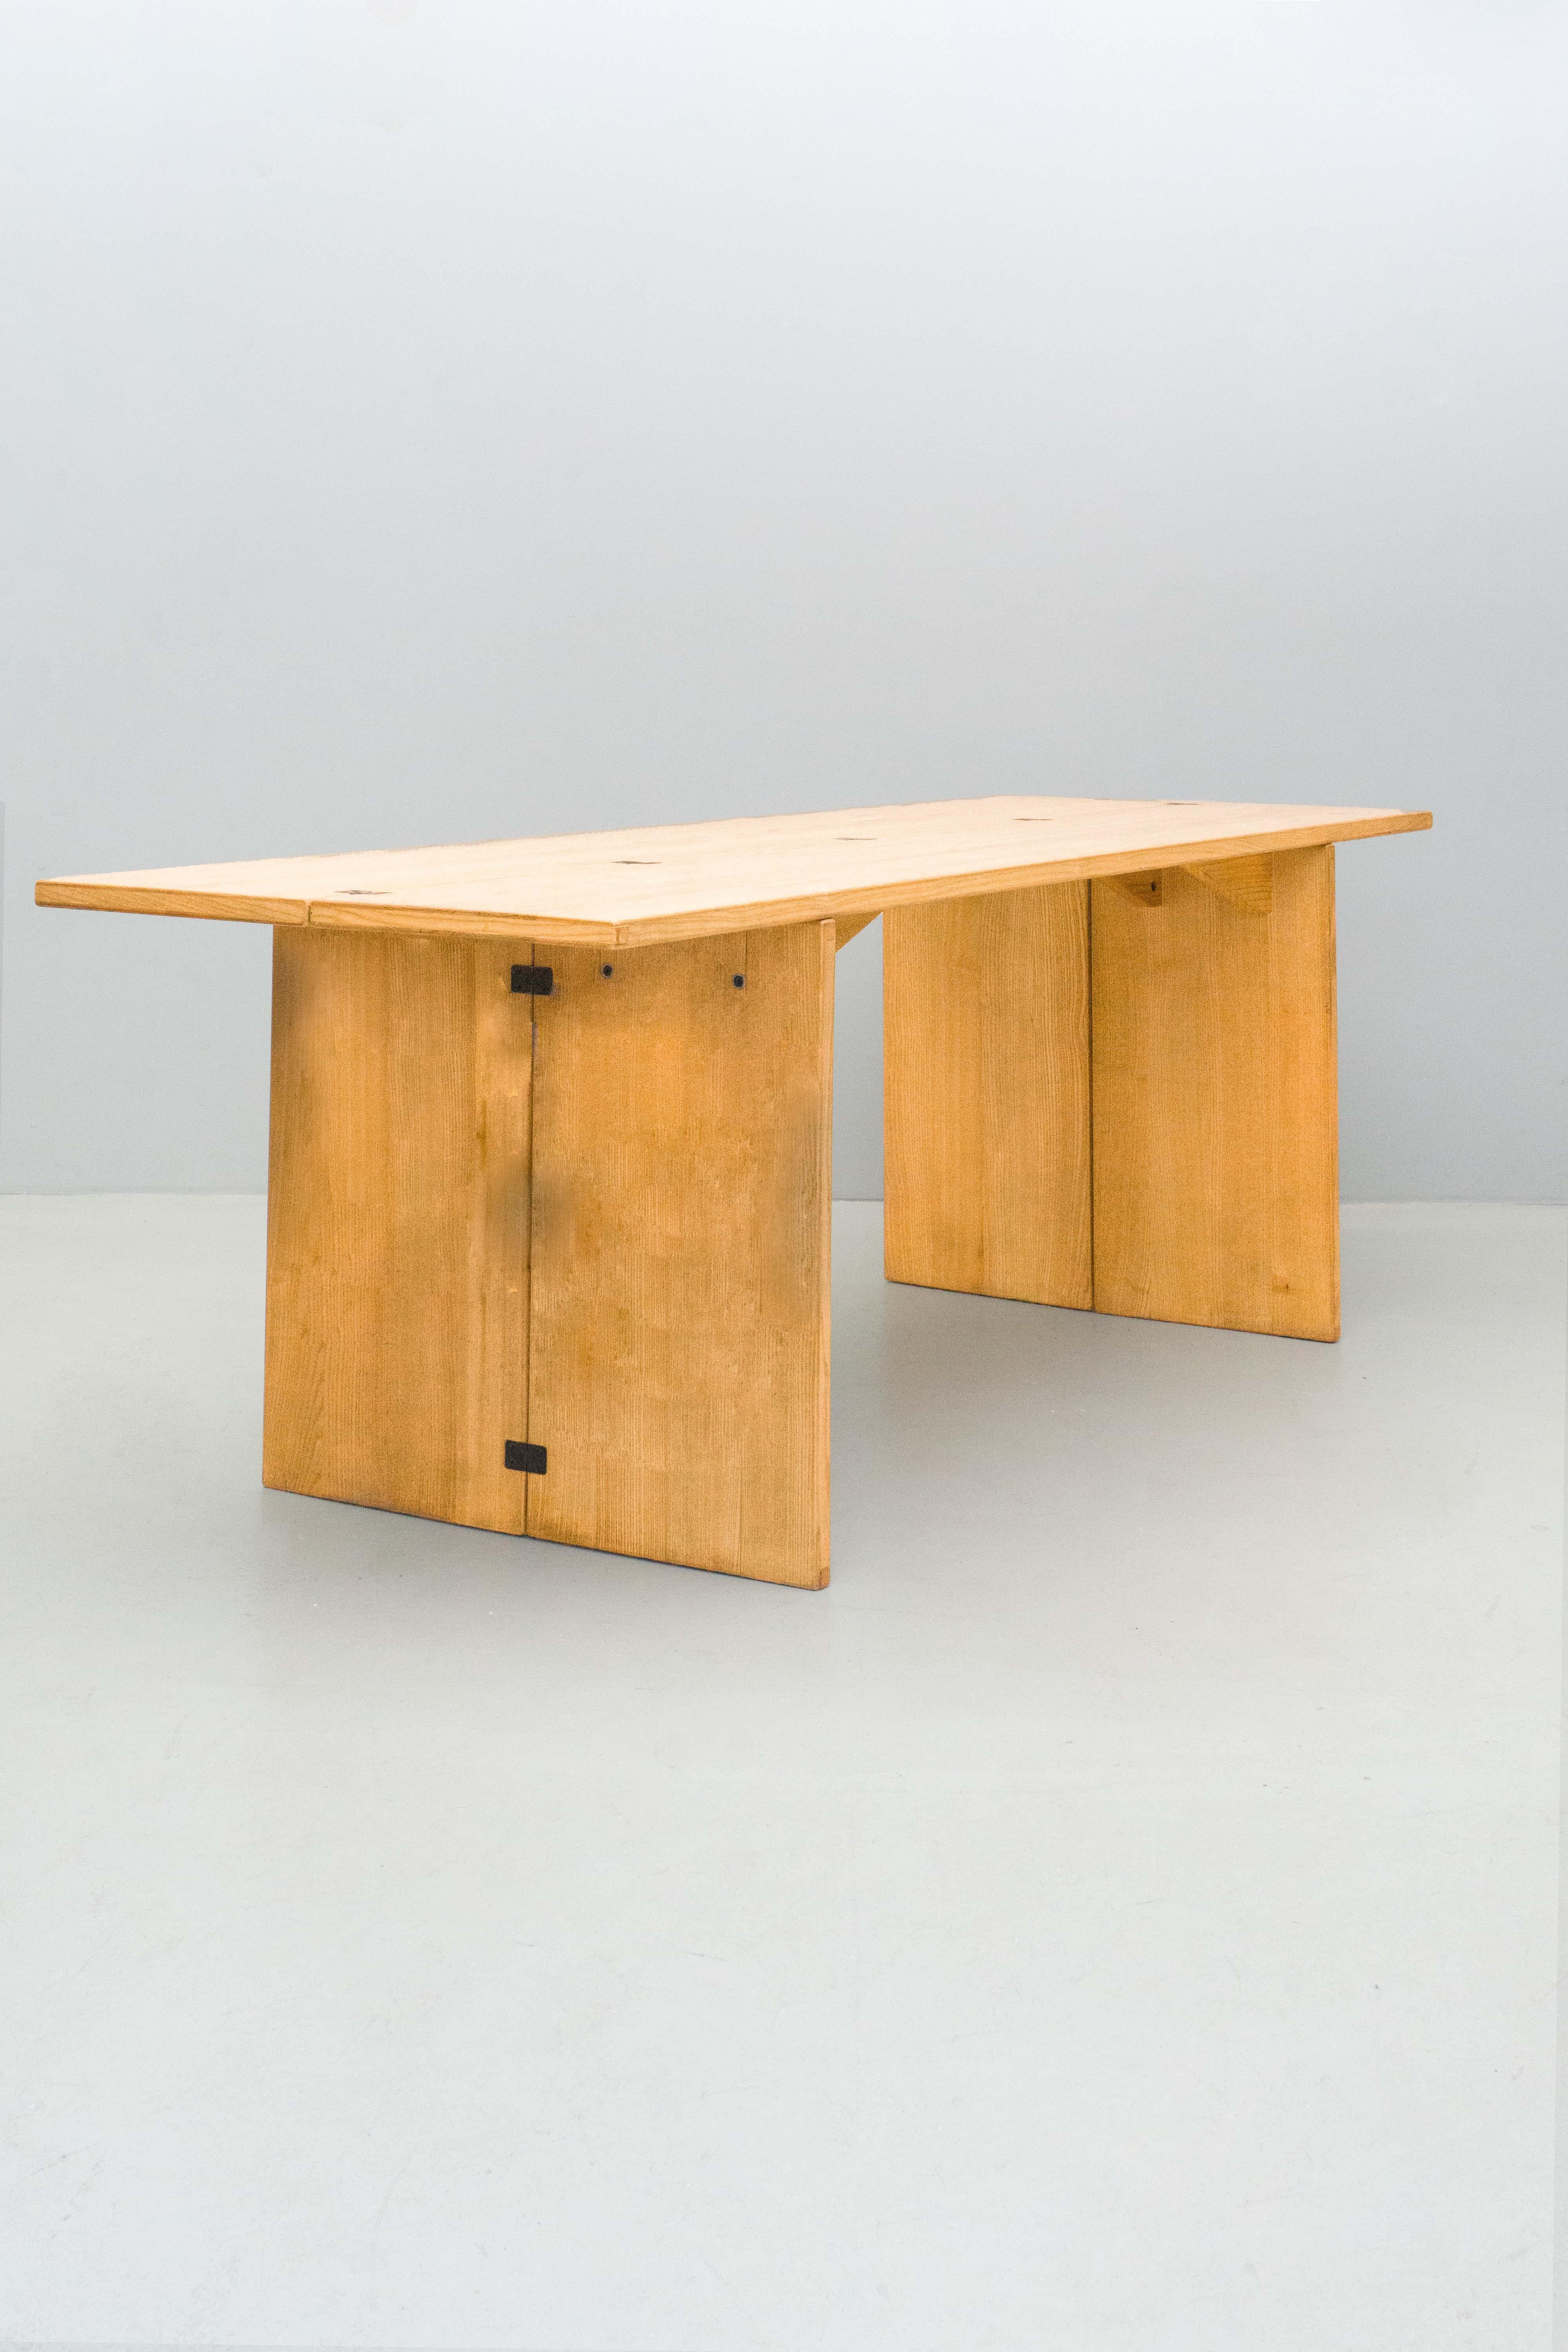 Dieser Tisch kann als Konsolentisch oder auch als eleganter Esszimmertisch oder Schreibtisch verwendet werden. Es ist ein praktisches und elegantes Stück. Was macht sie so praktisch? Sie können die Beine und auch die Oberfläche des Tisches